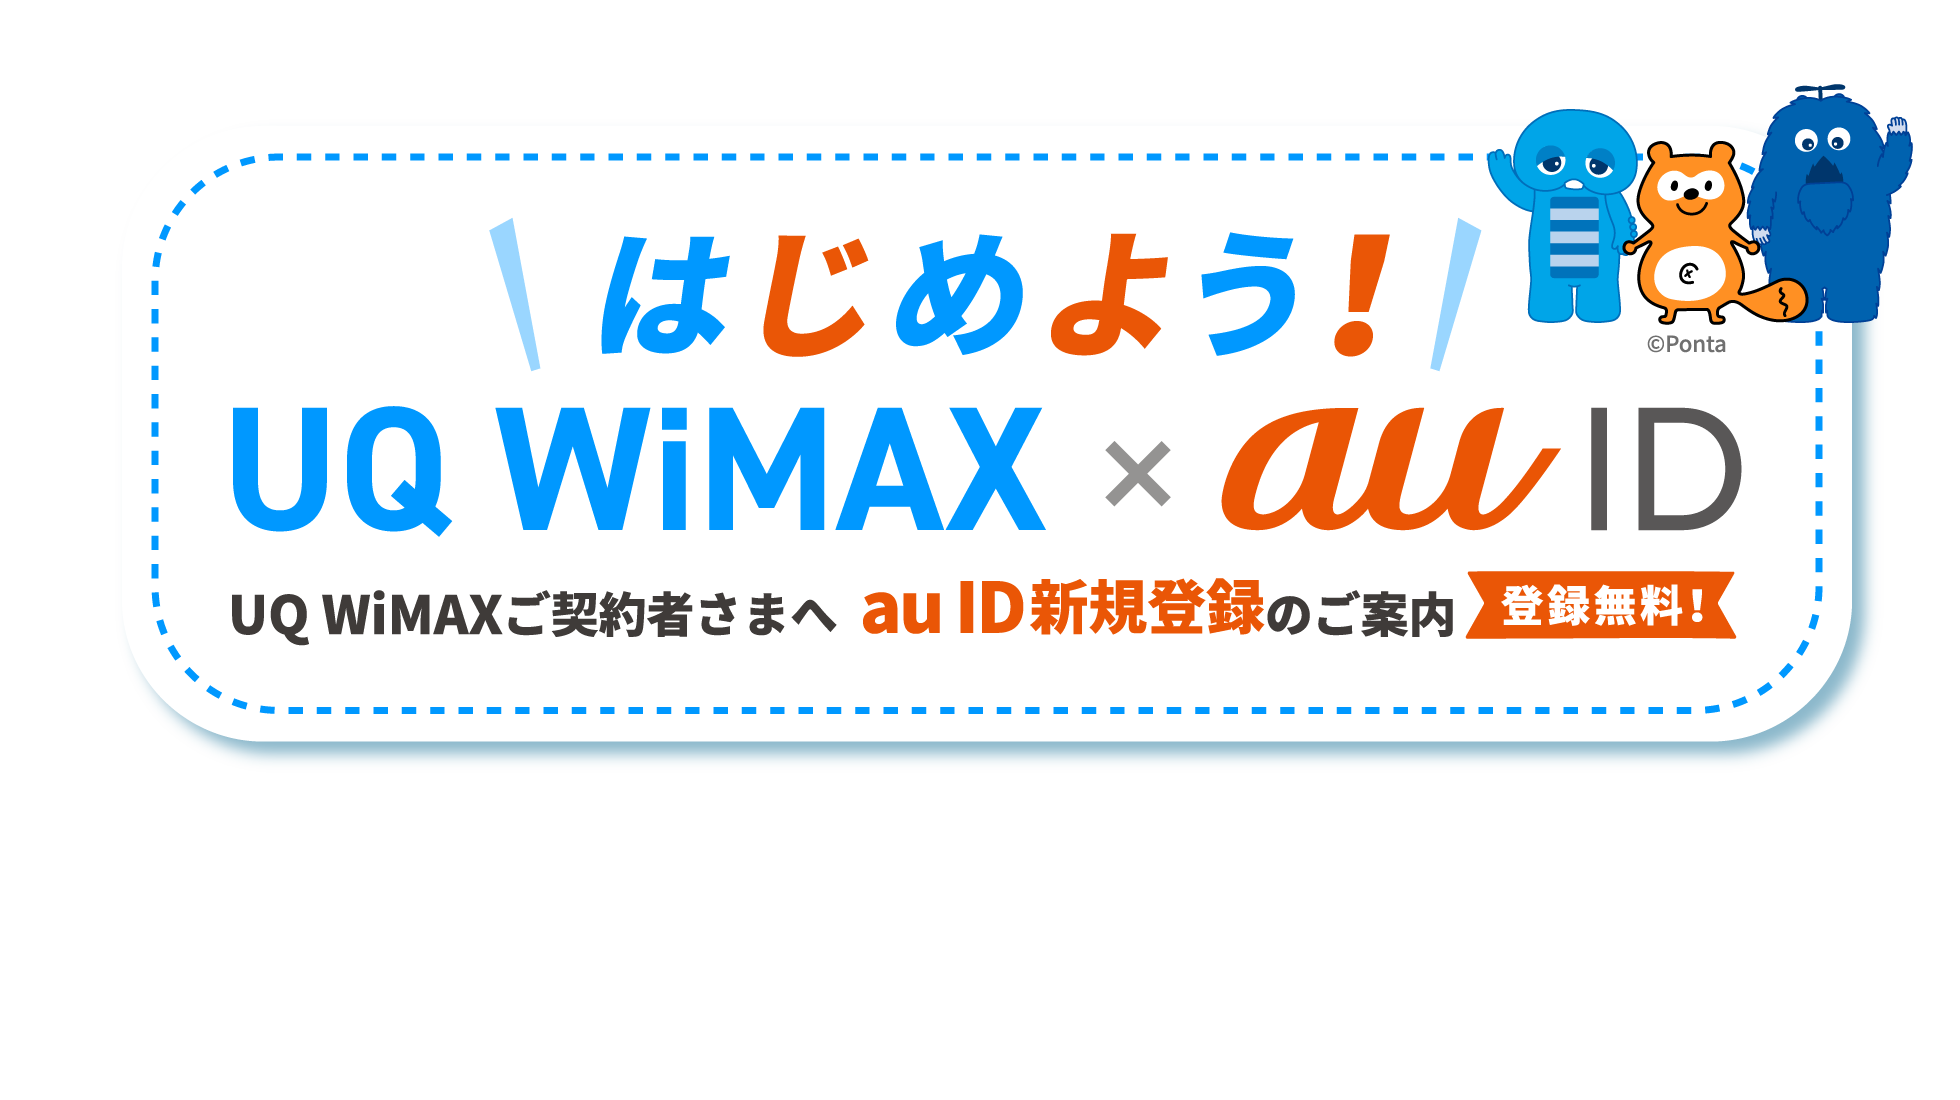 はじめよう！UQ WiMAX × au ID UQ WiMAXご契約者さまへ au ID新規登録のご案内 登録無料！ 新規契約時にau ID登録でPontaポイントがもらえる！